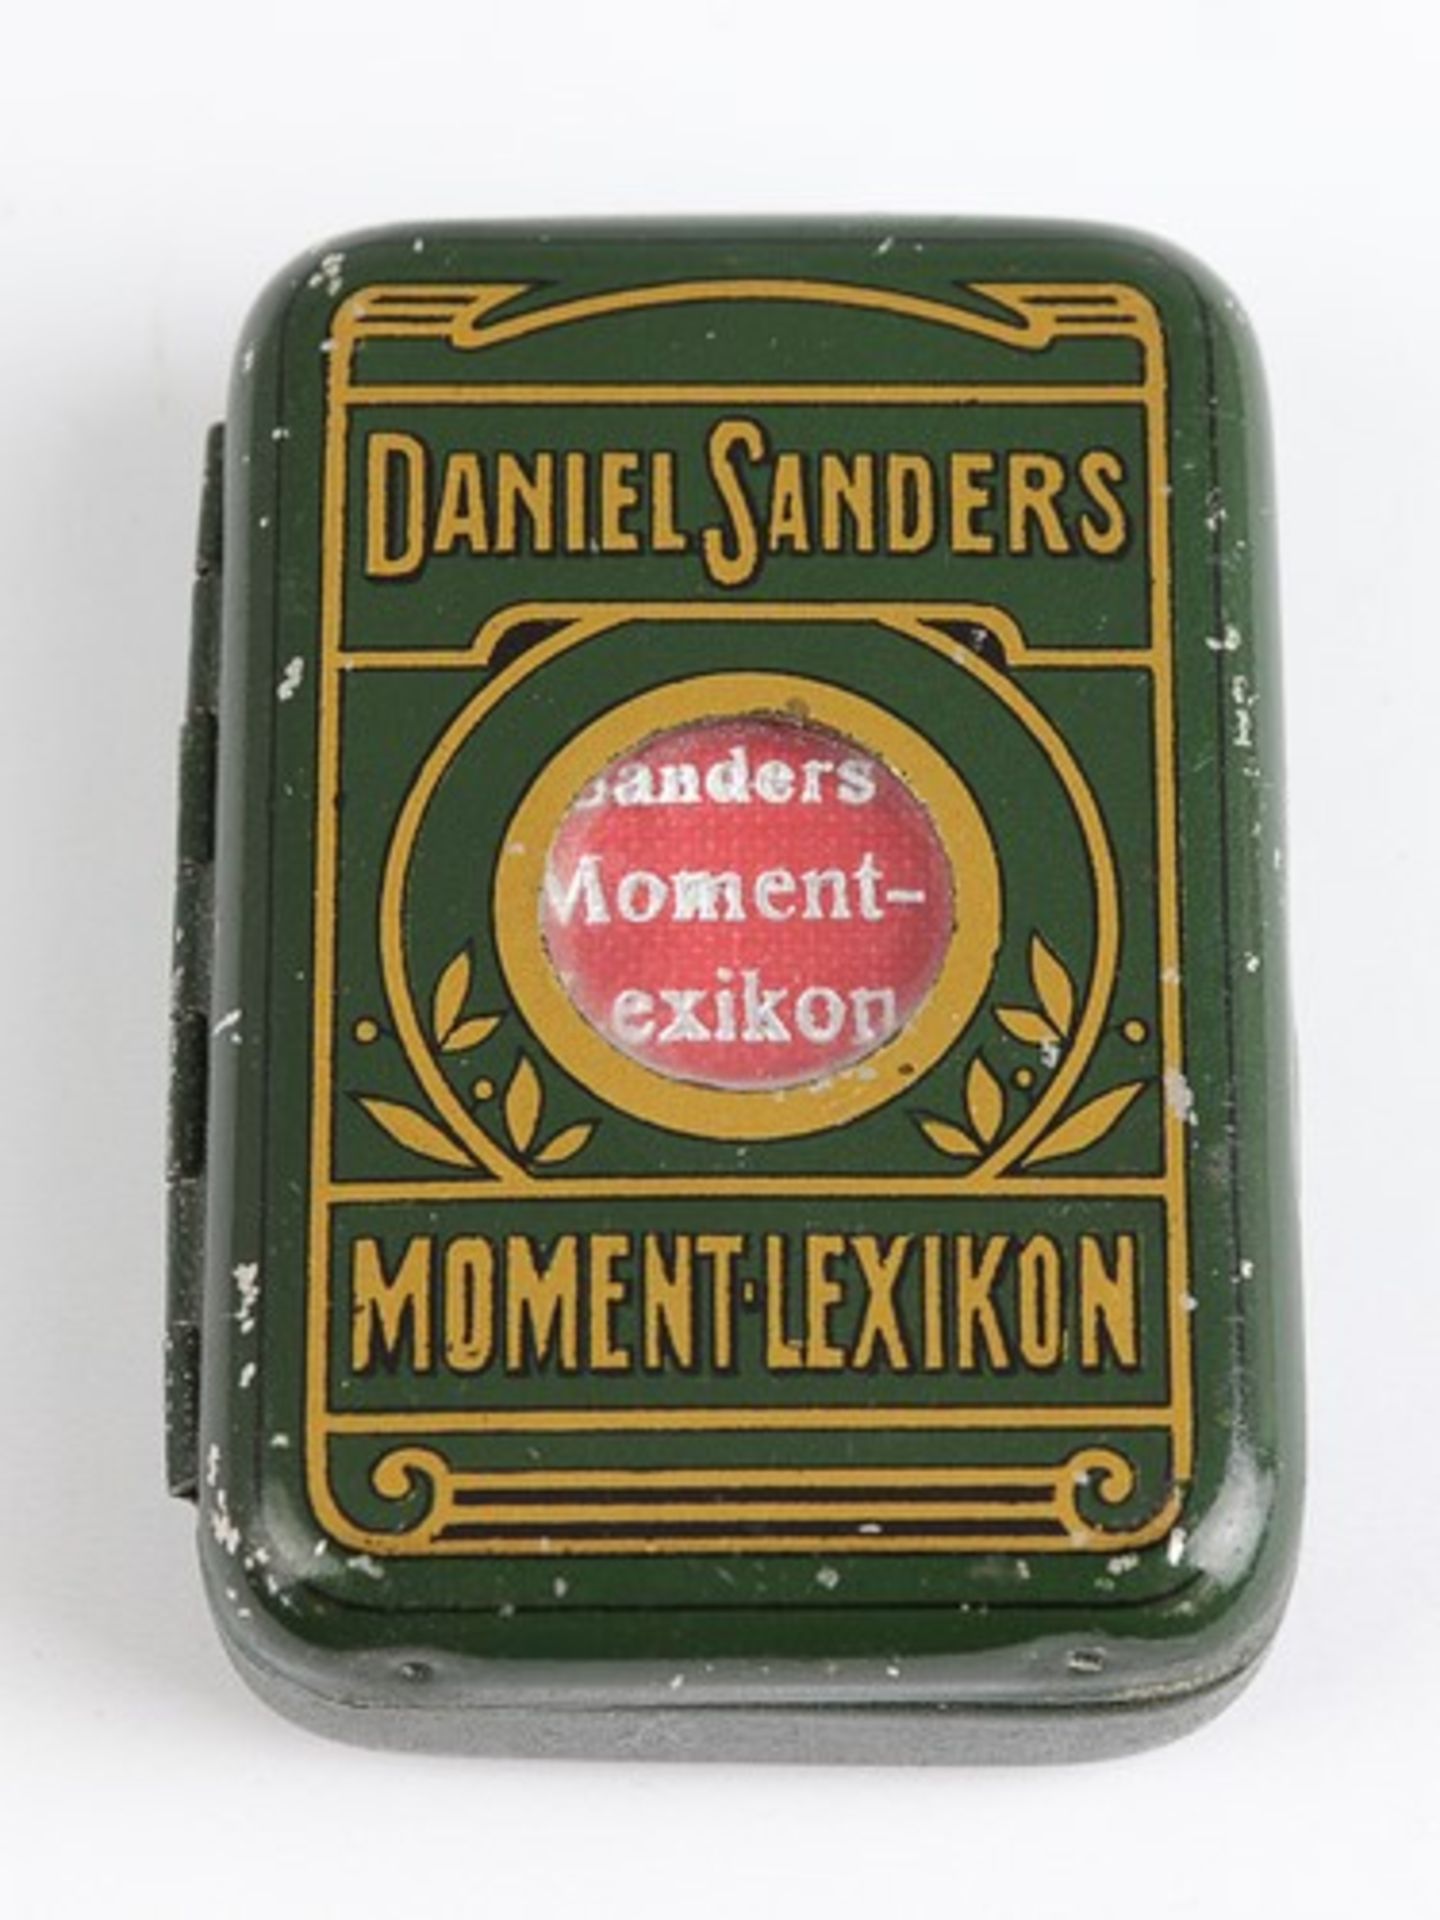 Daniel Sanders Moment-Lexikon und Fremdwörterbuchoriginelles 2-spaltiges Miniaturbuch, in ohne die